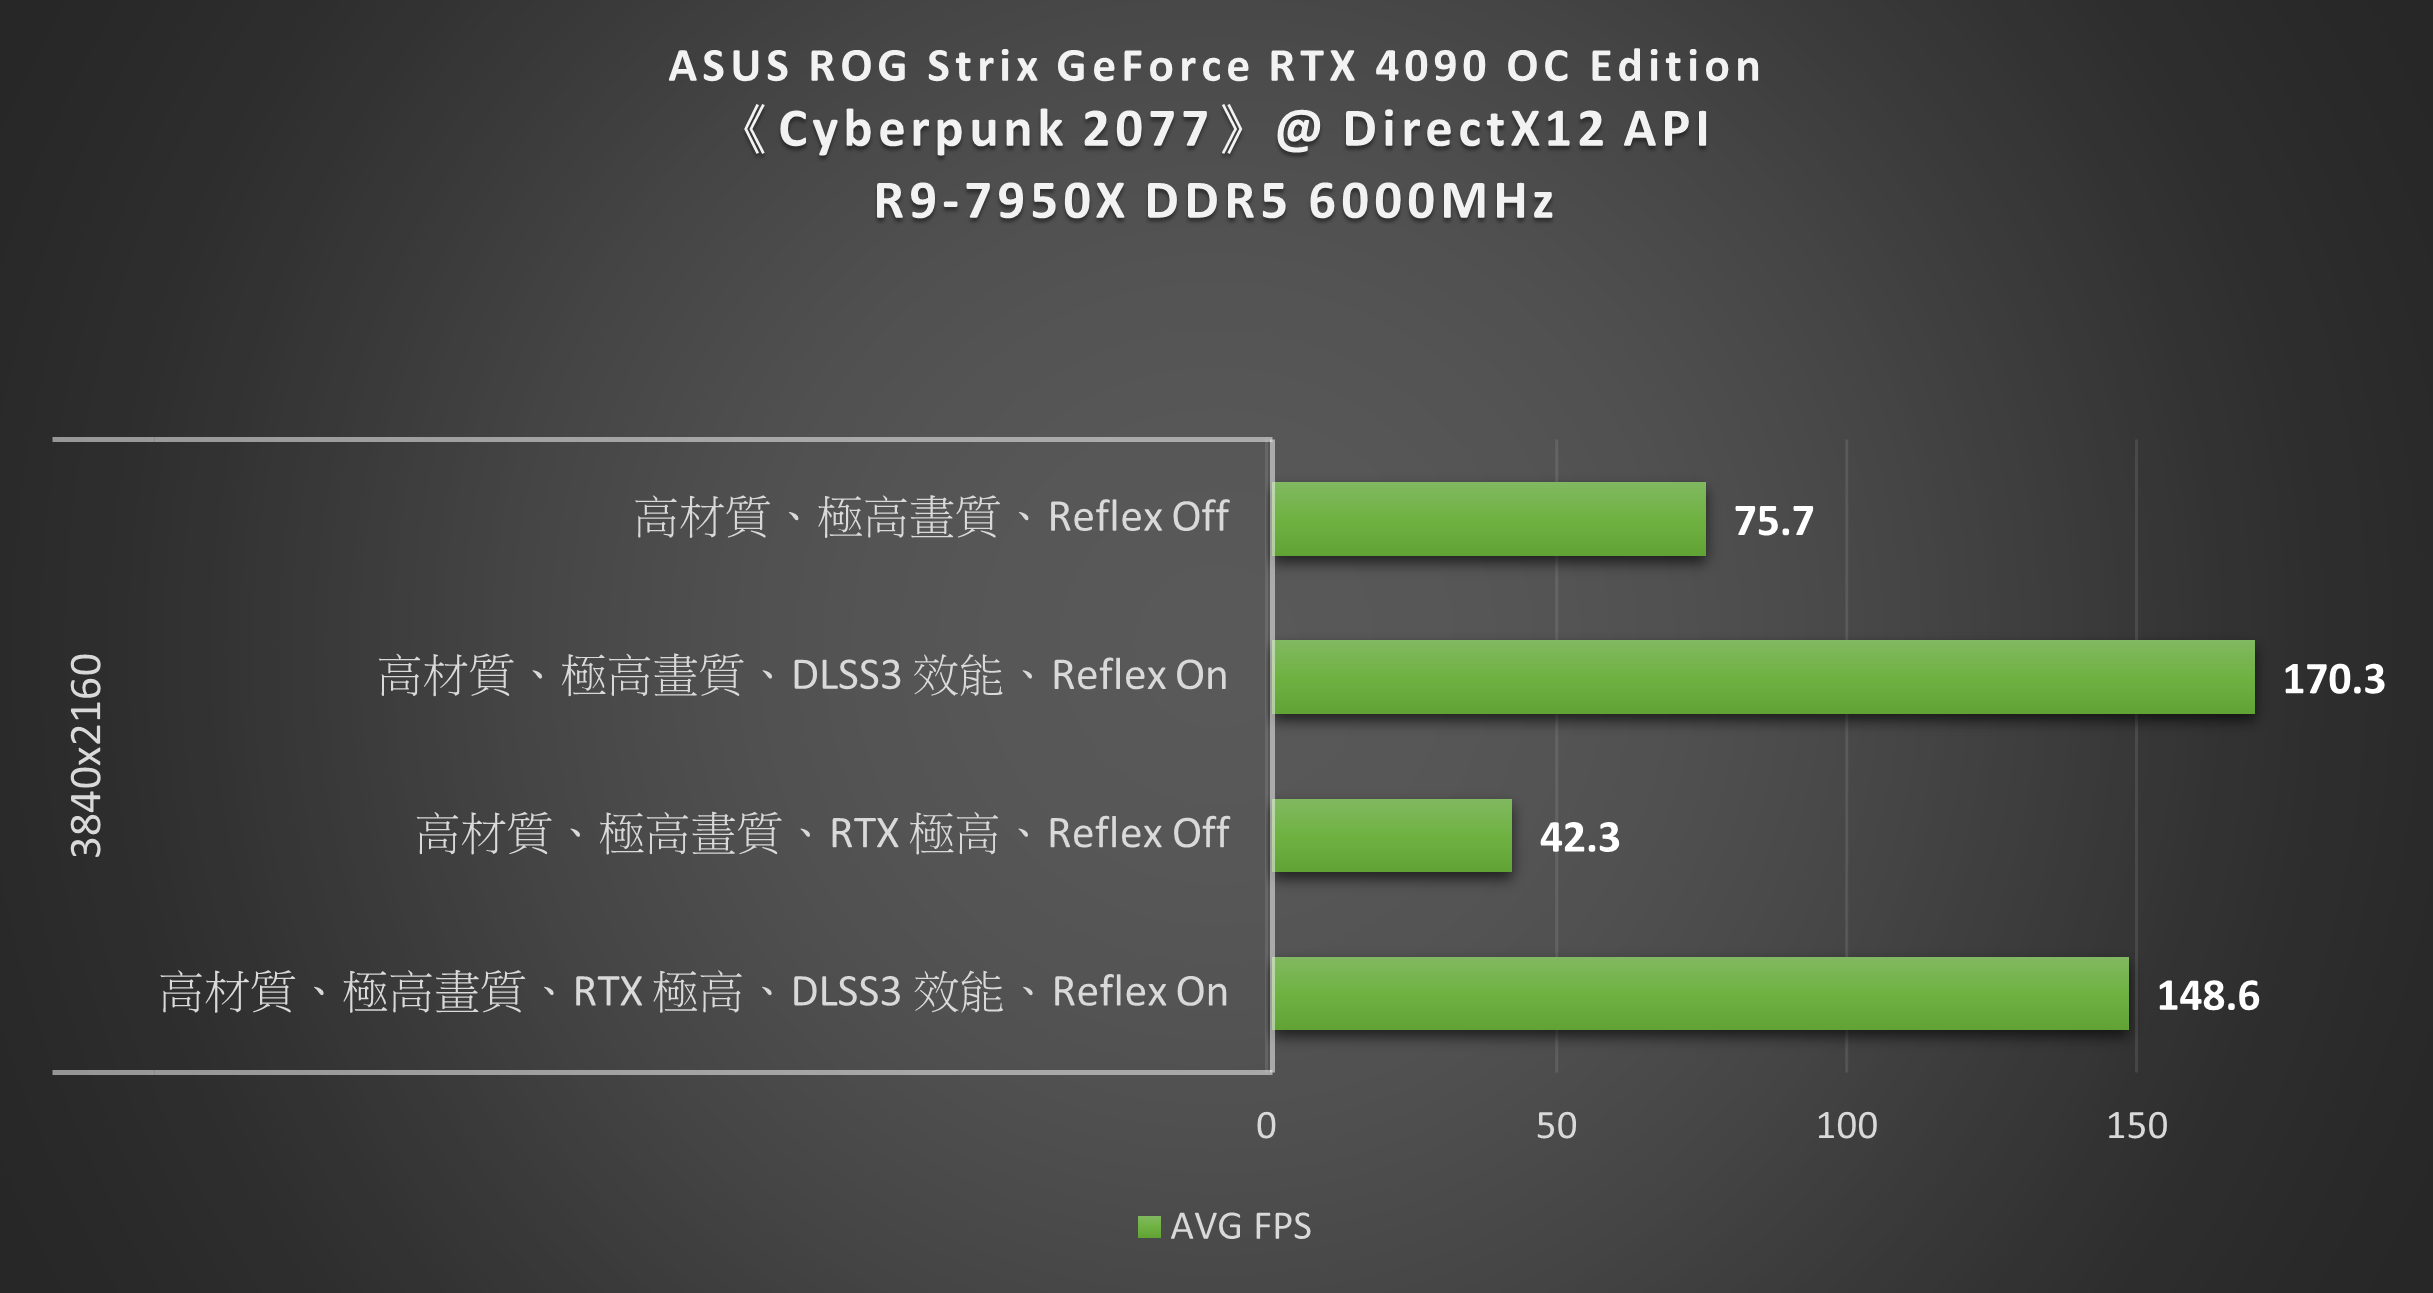 ASUS ROG Strix GeForce RTX 4090